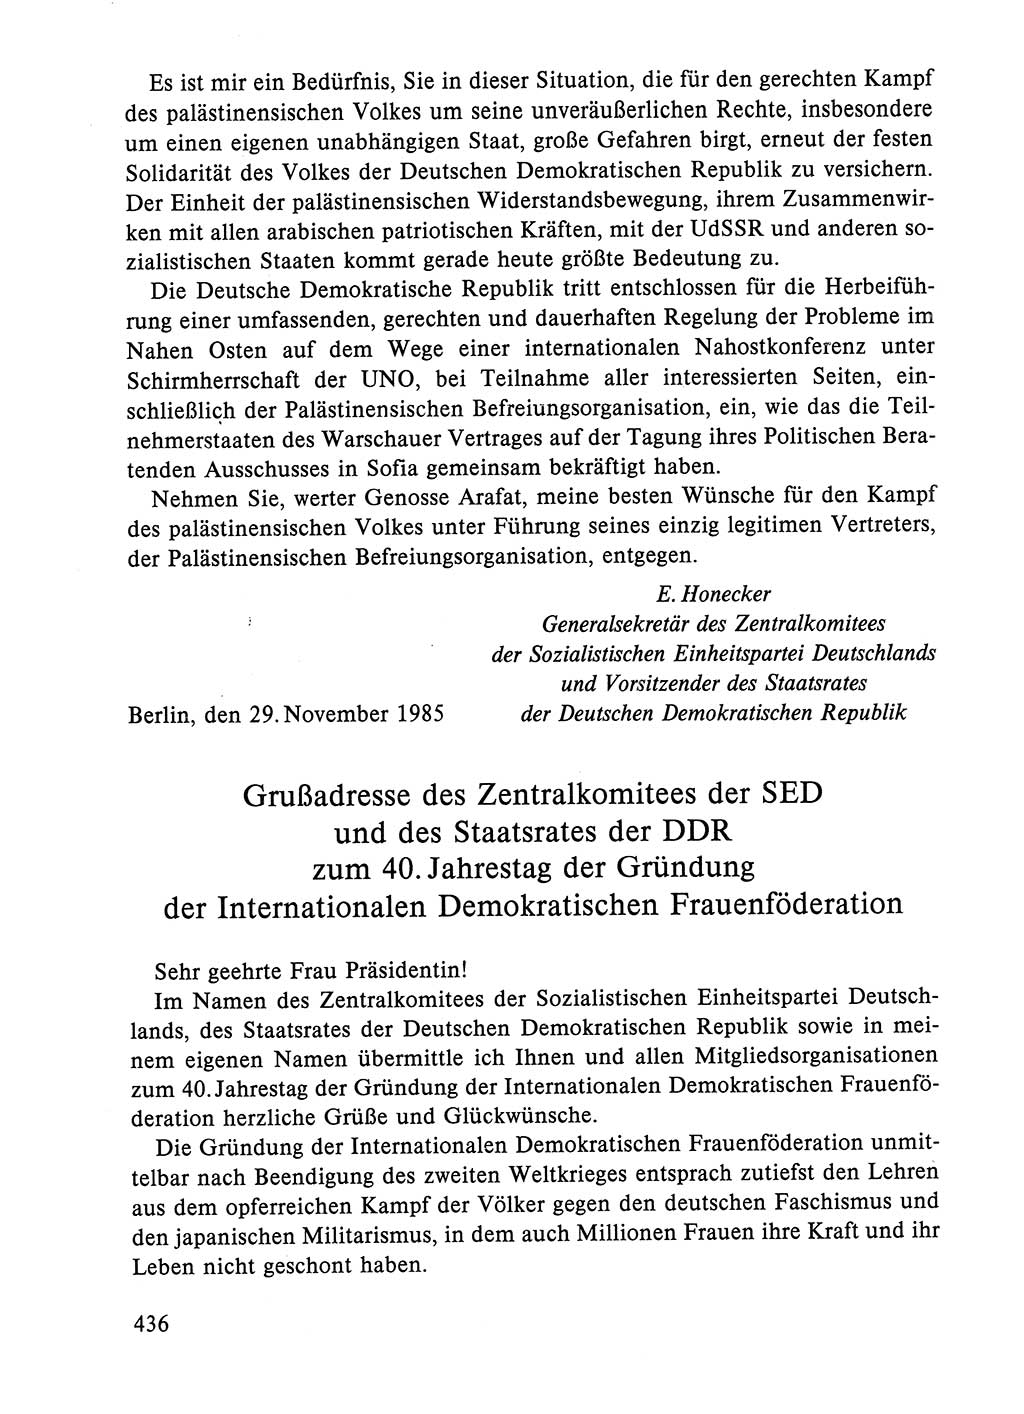 Dokumente der Sozialistischen Einheitspartei Deutschlands (SED) [Deutsche Demokratische Republik (DDR)] 1984-1985, Seite 436 (Dok. SED DDR 1984-1985, S. 436)